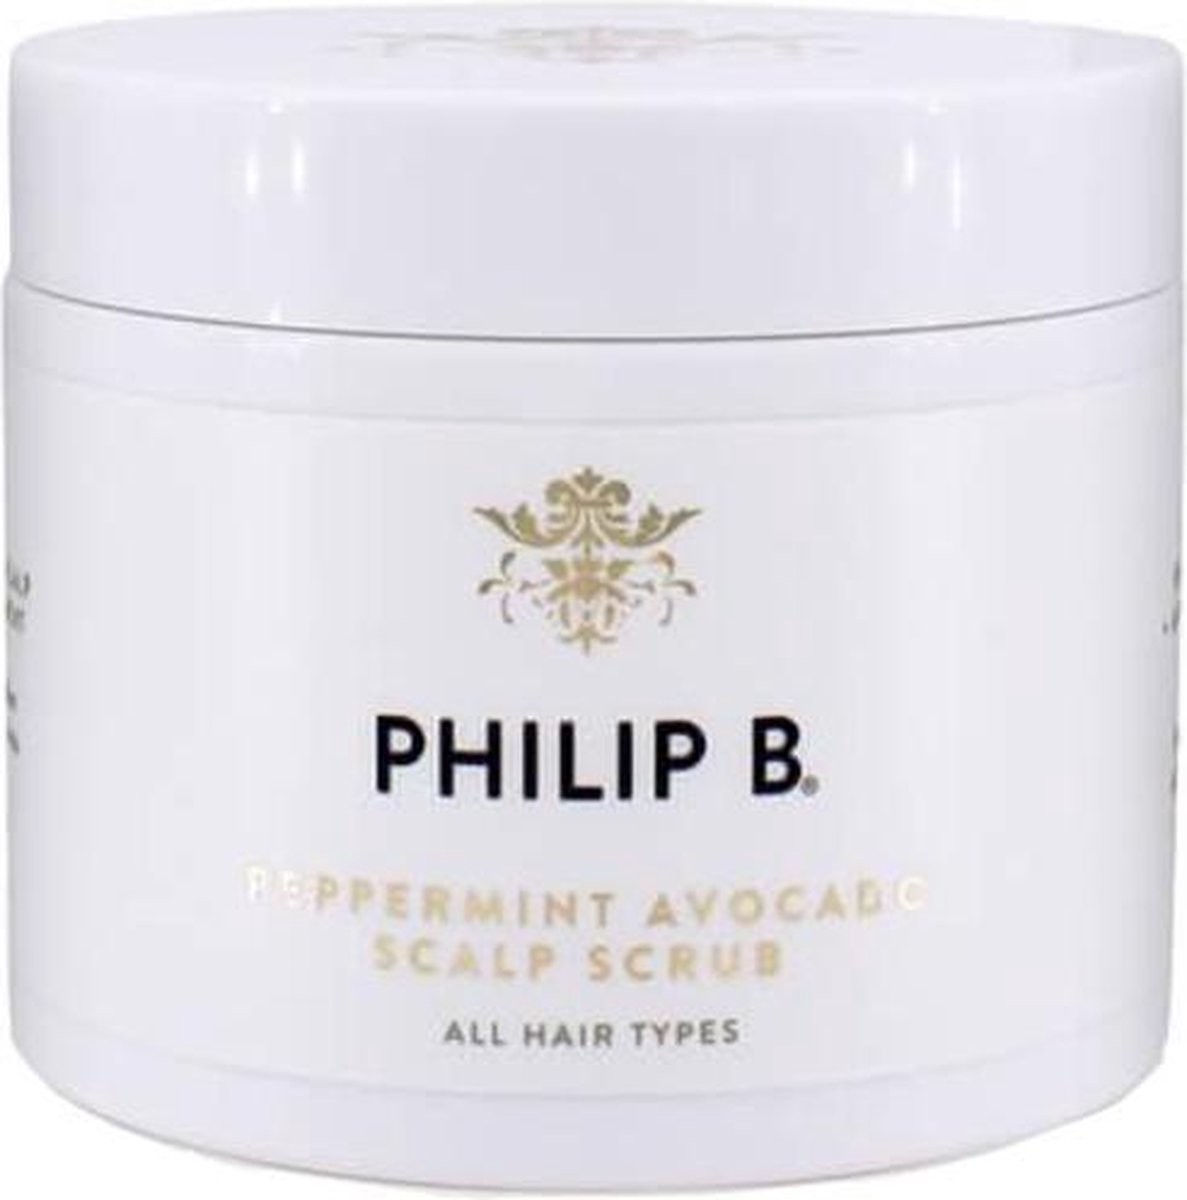 Philip B Peppermint Avocado Scalp Scrub 236 ml - vrouwen - Voor Gevoelige hoofdhuid/Vet haar